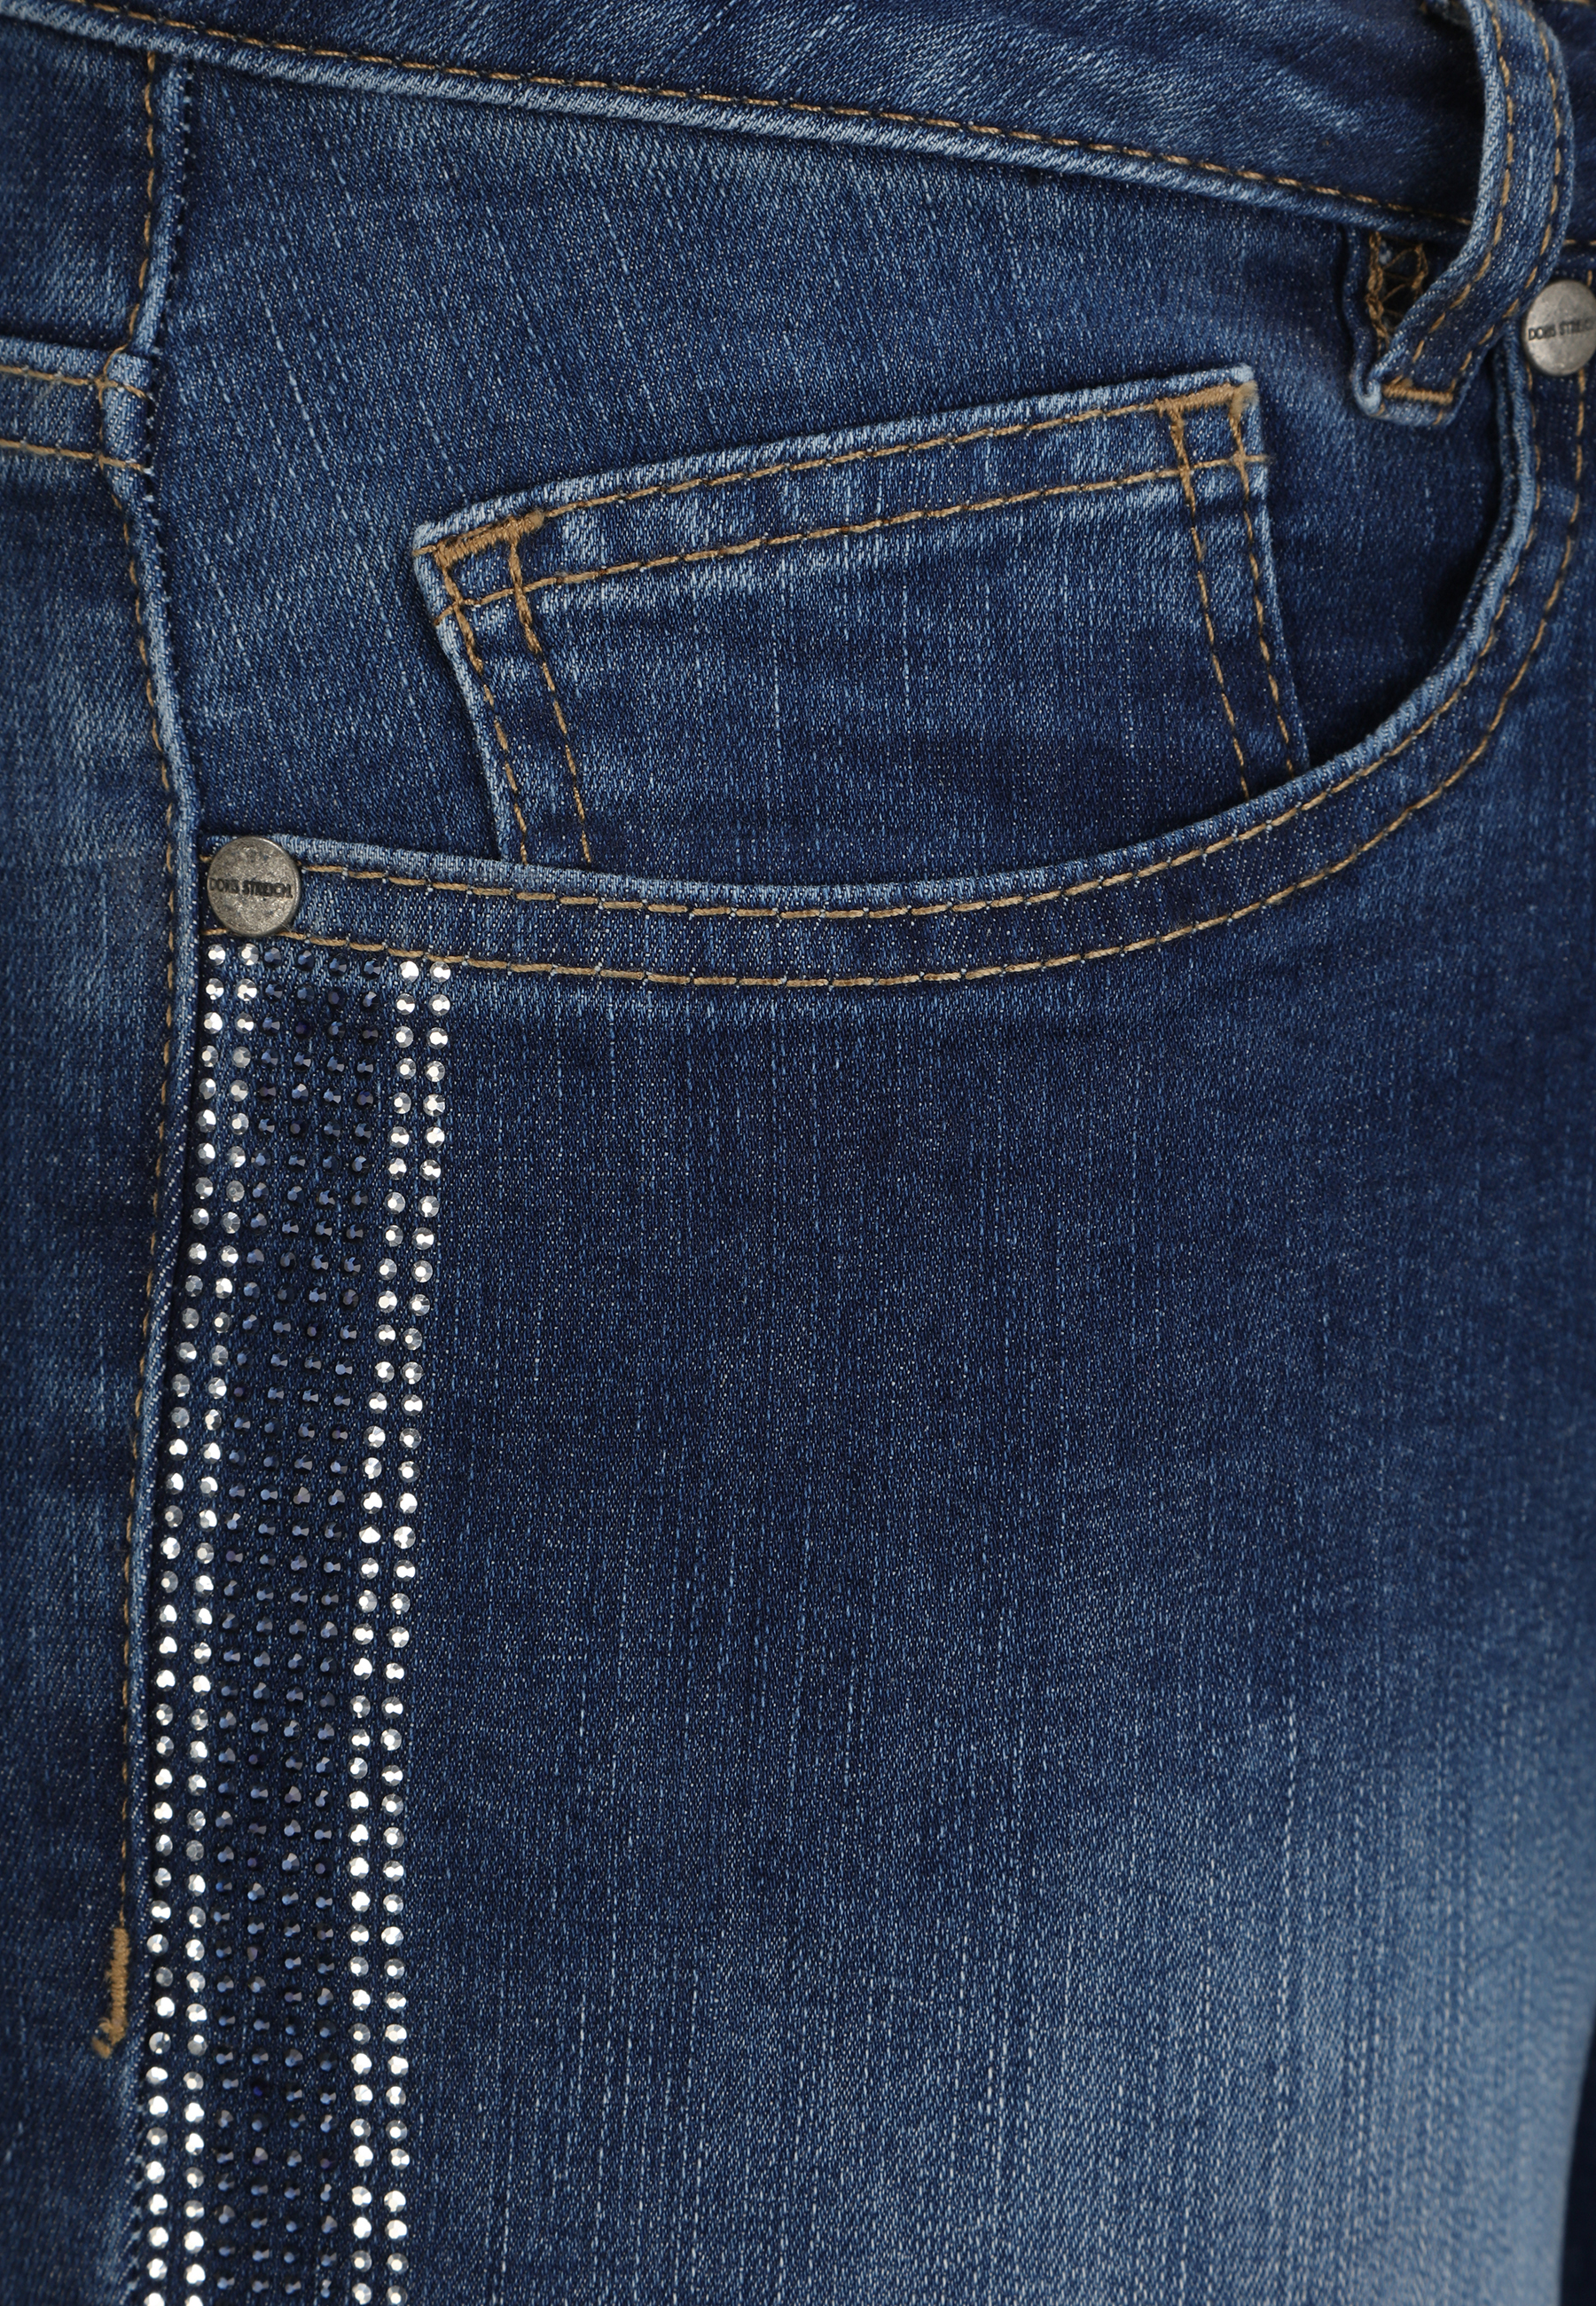 Doris Streich Jeans in Blau 